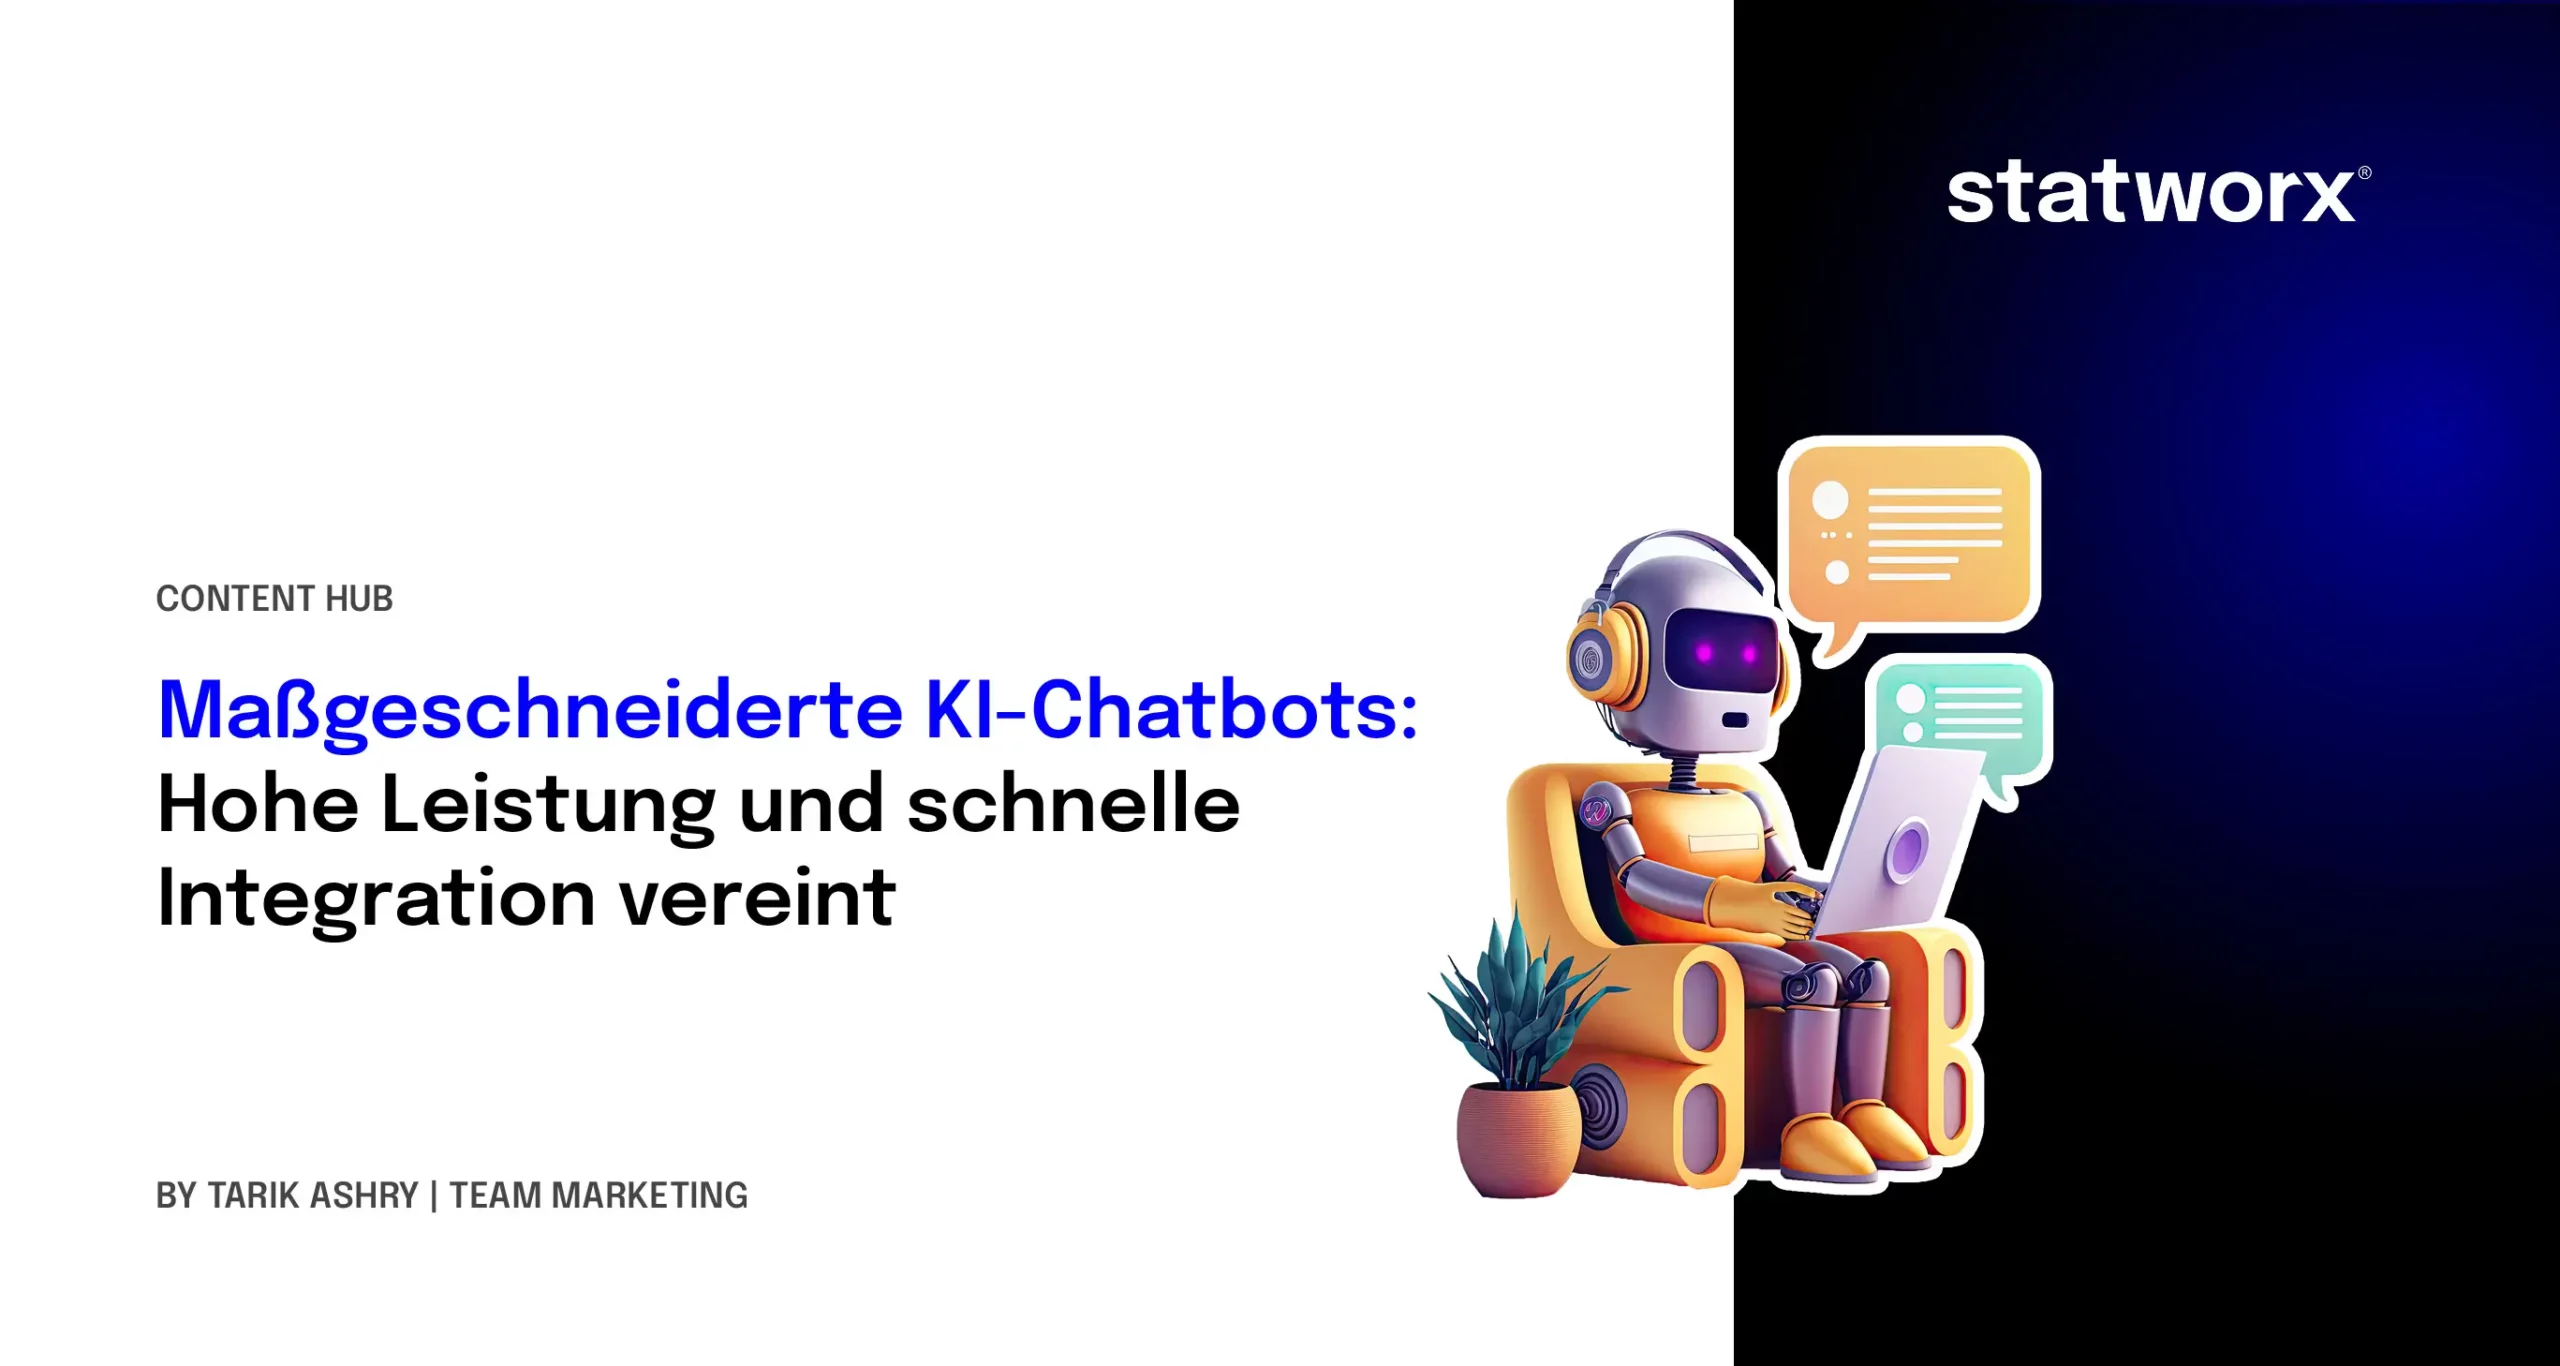 Maßgeschneiderte KI-Chatbots: Hohe Leistung und schnelle Integration vereint